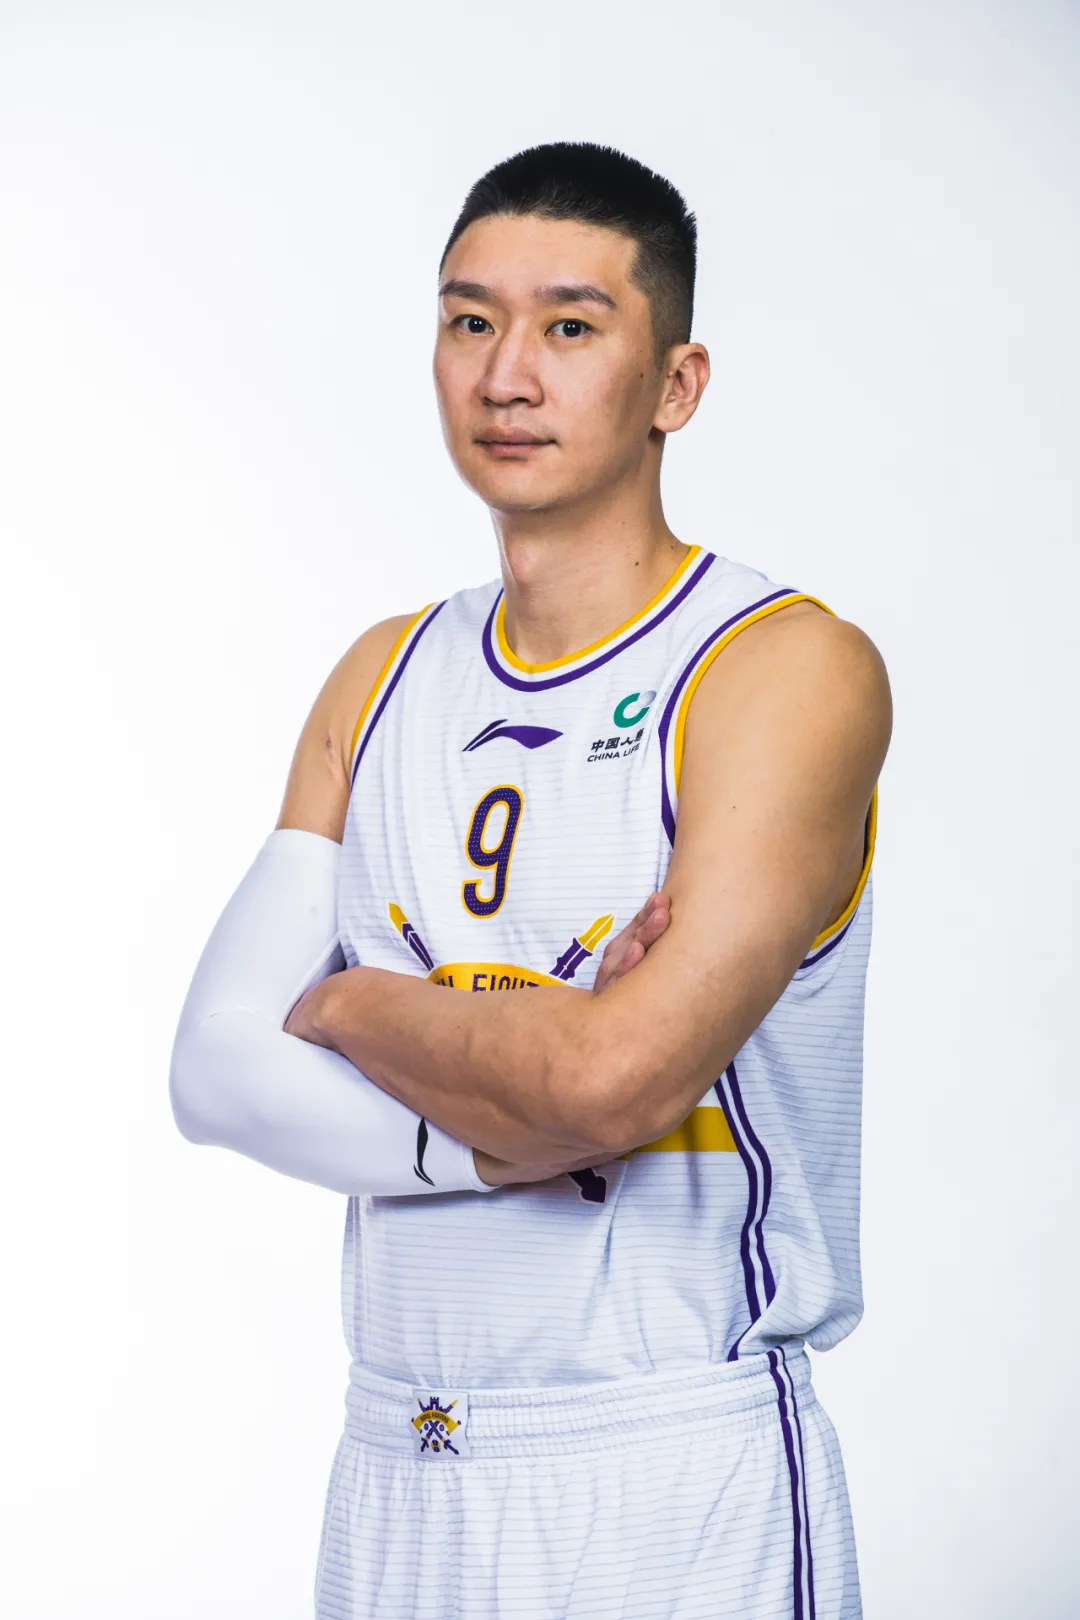 孙悦篮球运动员图片